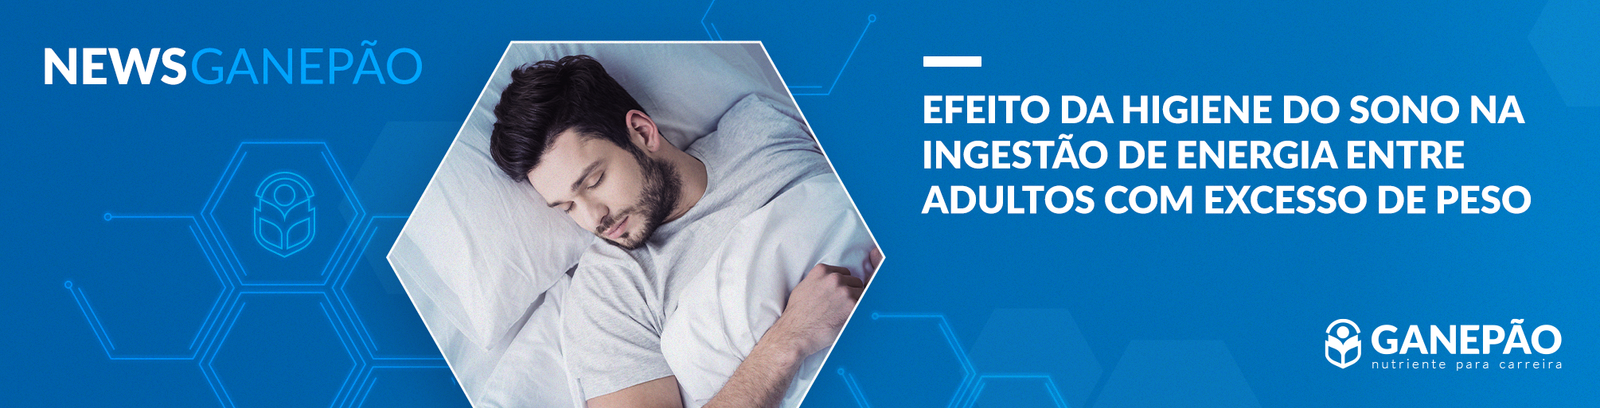 Você está visualizando atualmente Efeito da higiene do sono na ingestão de energia entre adultos com excesso de peso